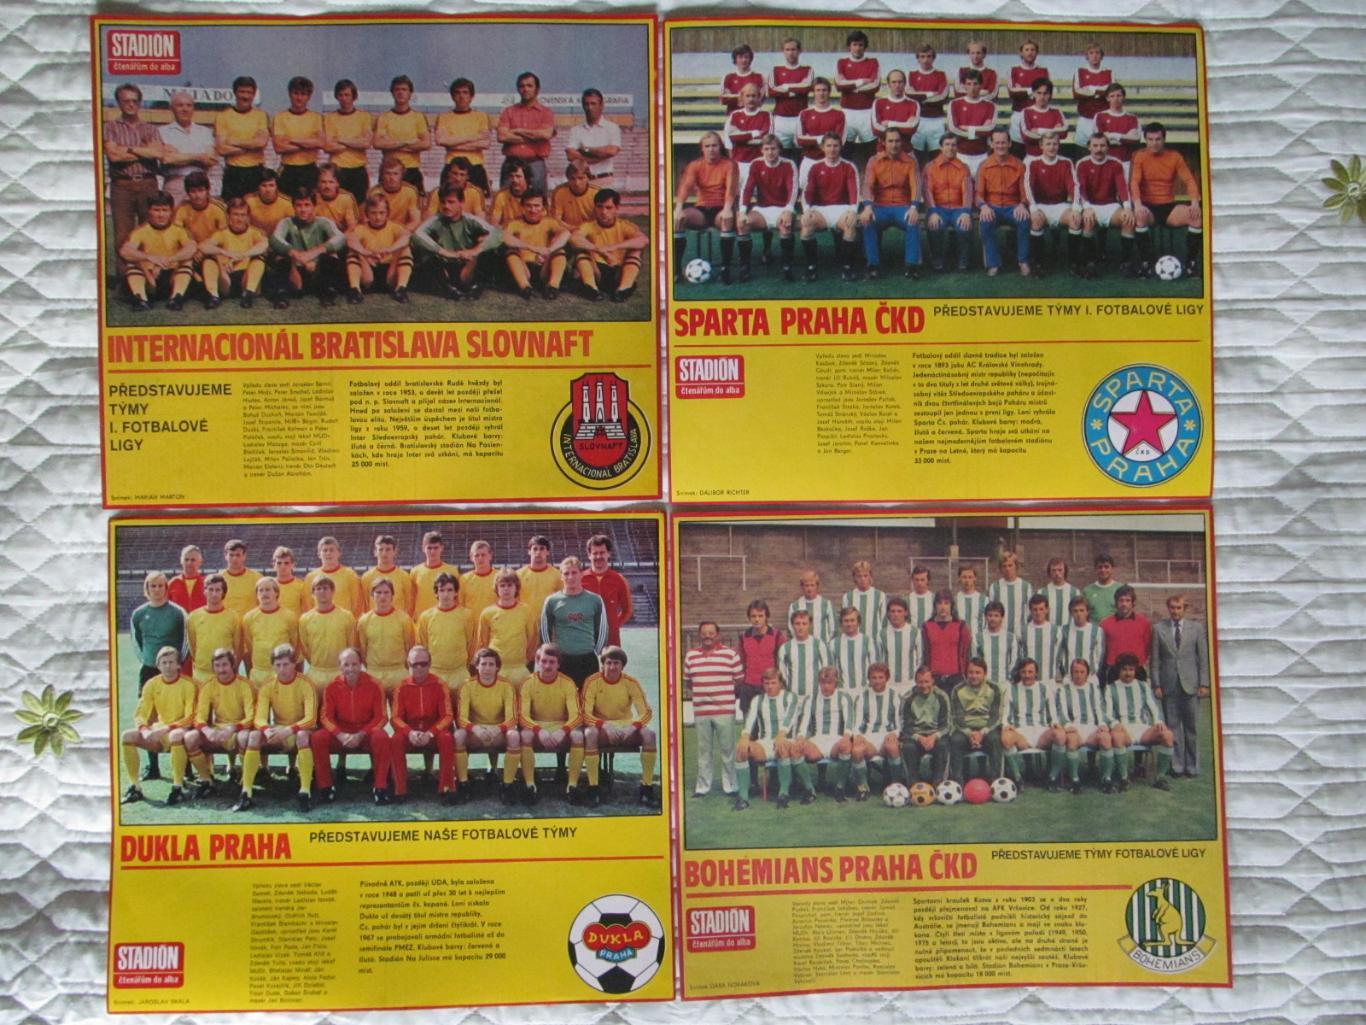 Постеры команд Чехословакии из журнала Stadion/Стадион 1980г